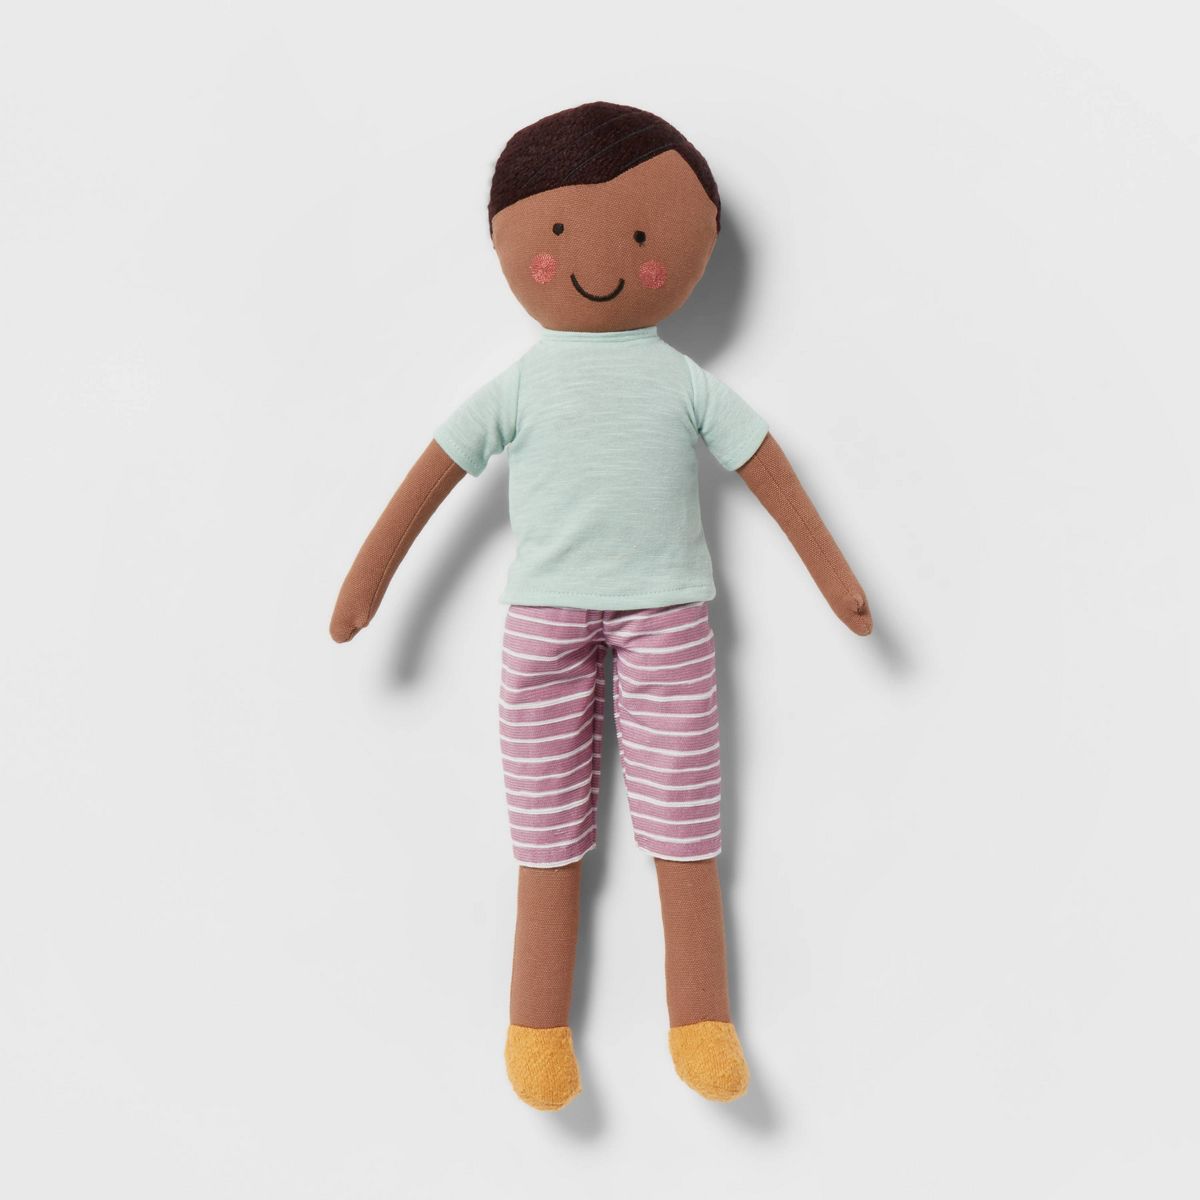 Decorative Kids' Pillow Pal Teal - Pillowfort™ | Target